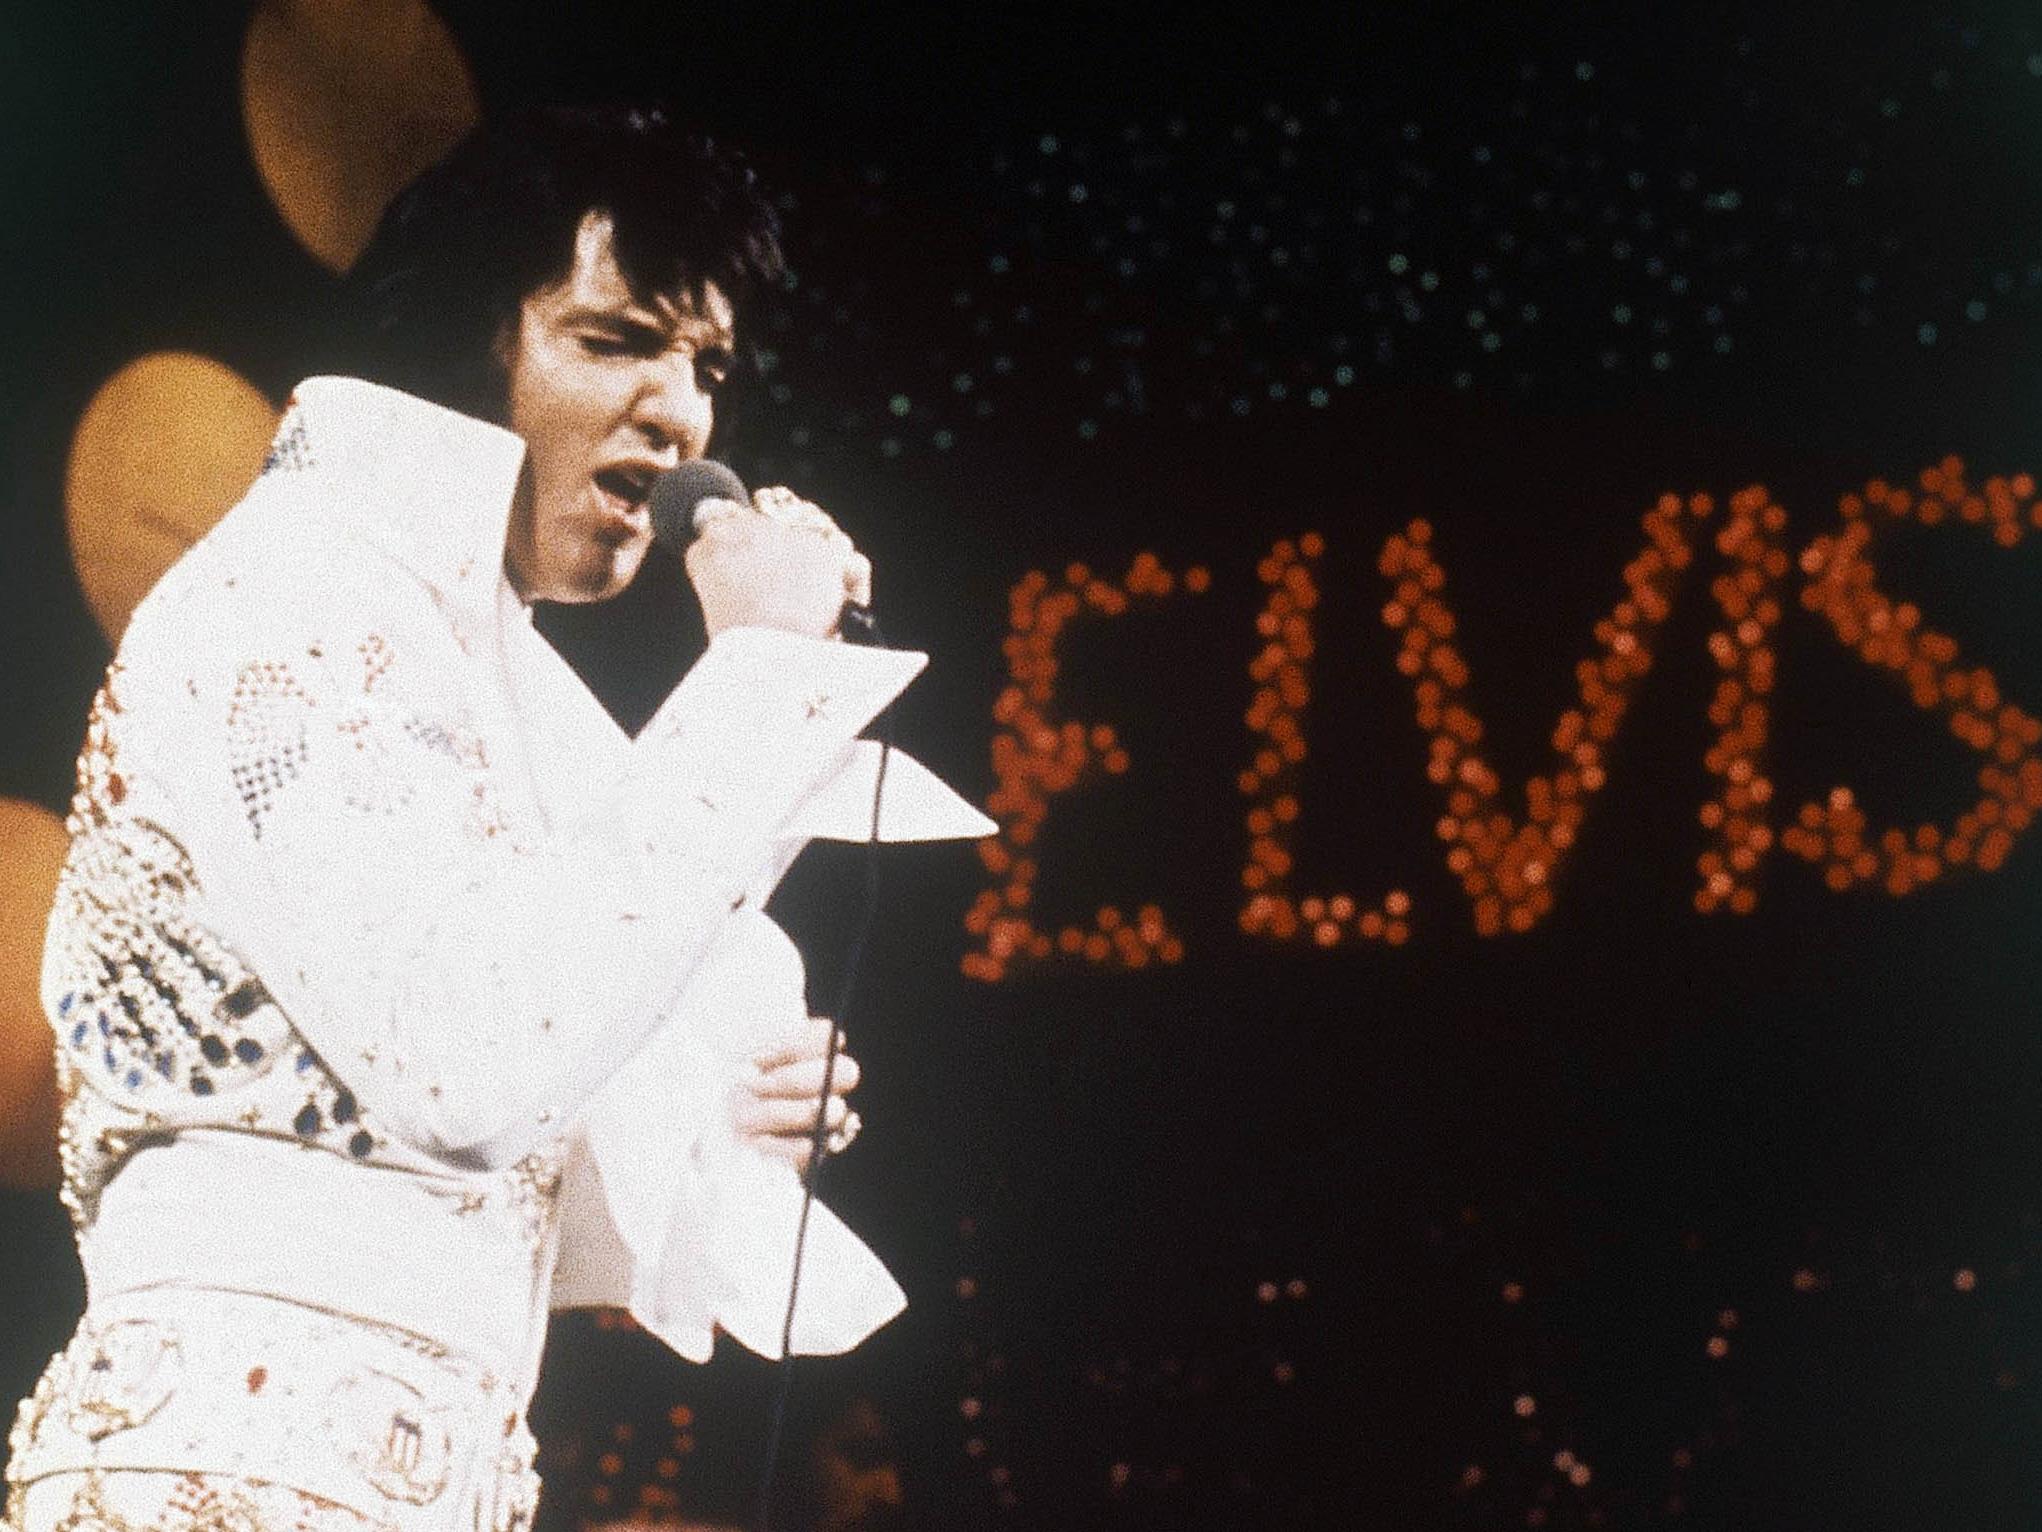 Der King Elvis Presley hätte am 8. Jänner 2015 seinen 80. Geburtstag gefeiert.